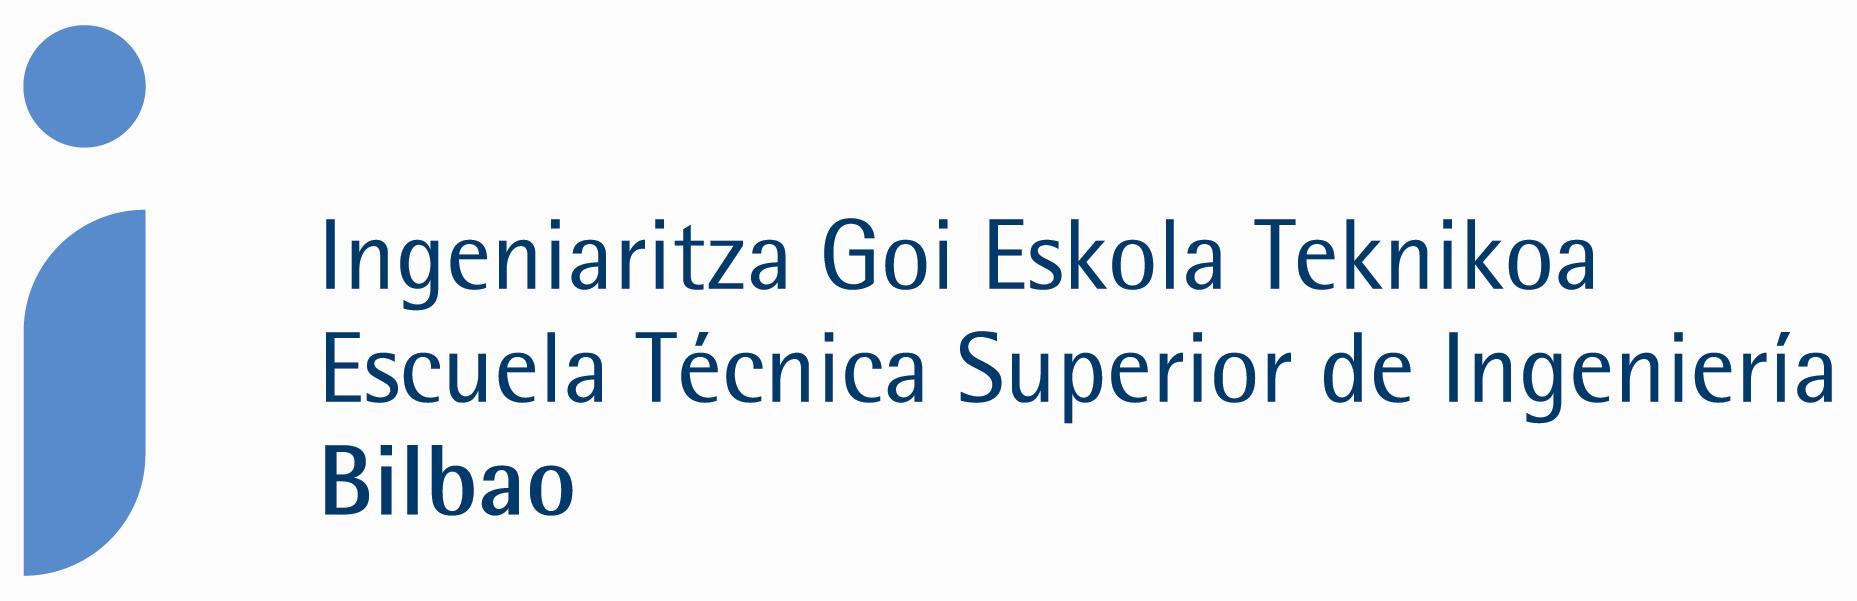 Logo de ETSI de Bilbao